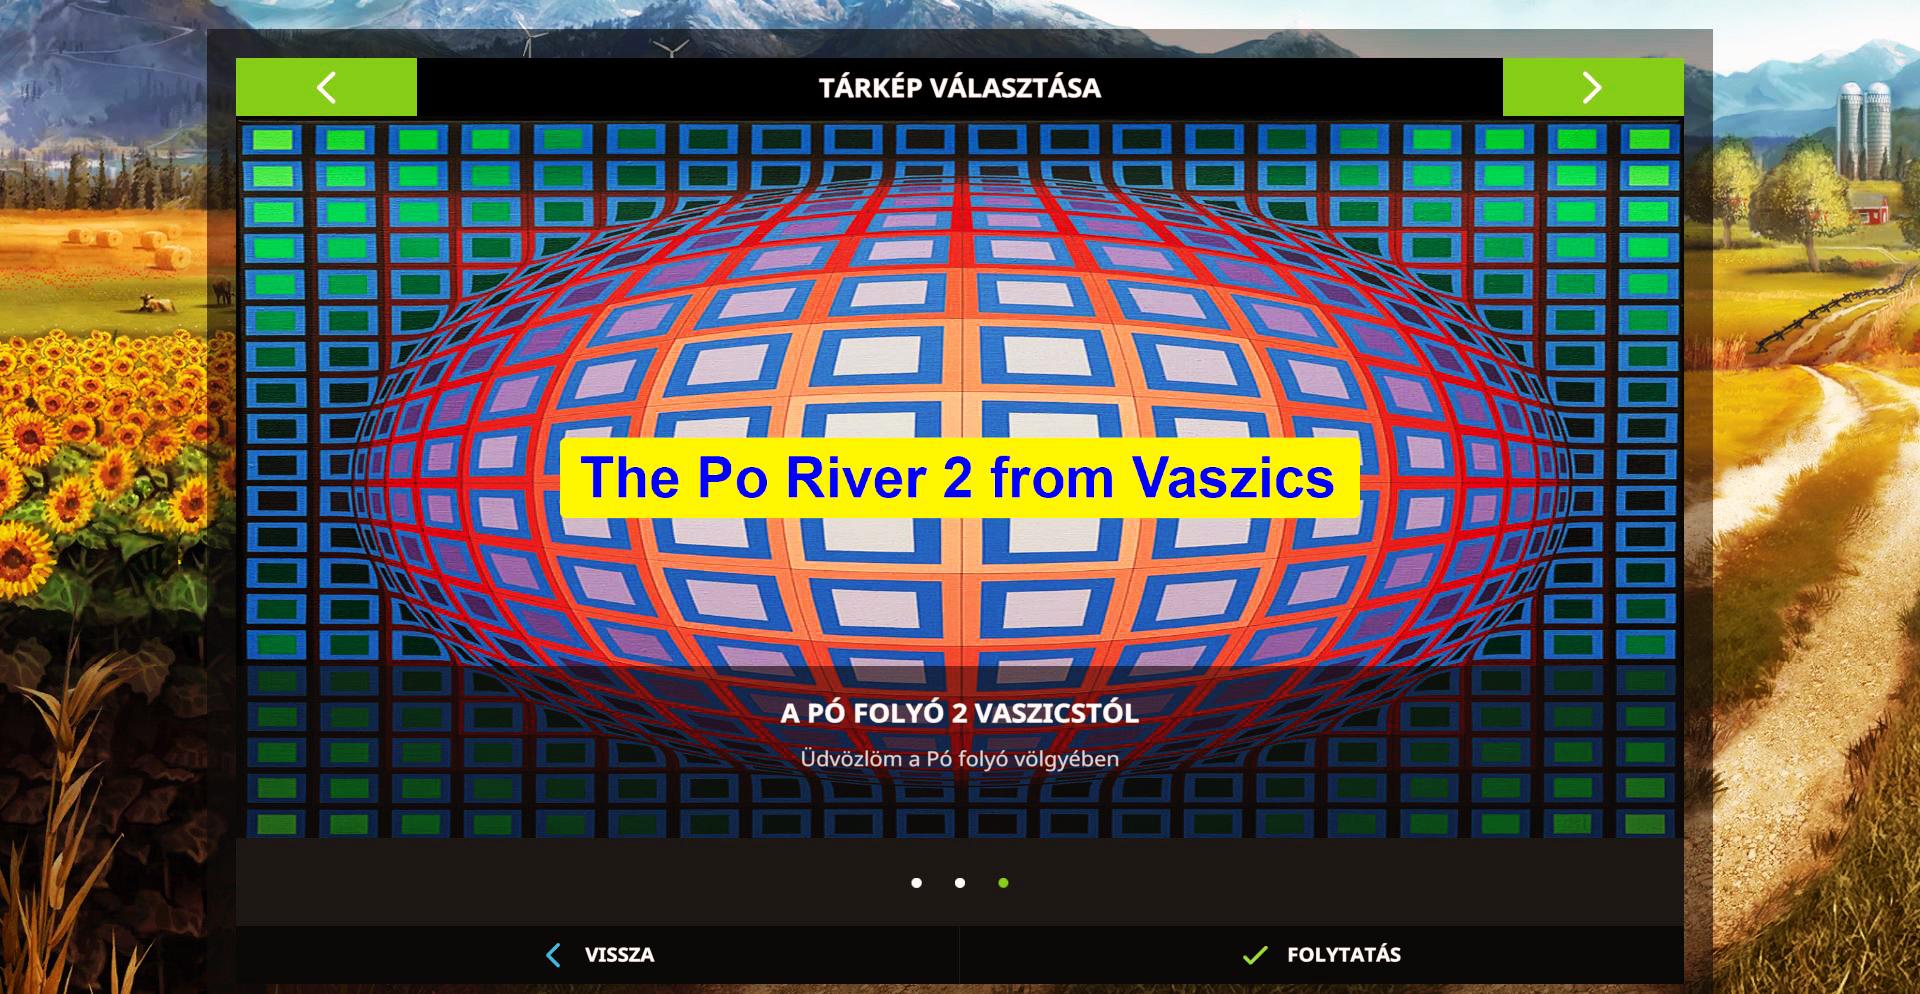 FS17 - The Po River 2 From Vaszics Hotfix1 V1.0